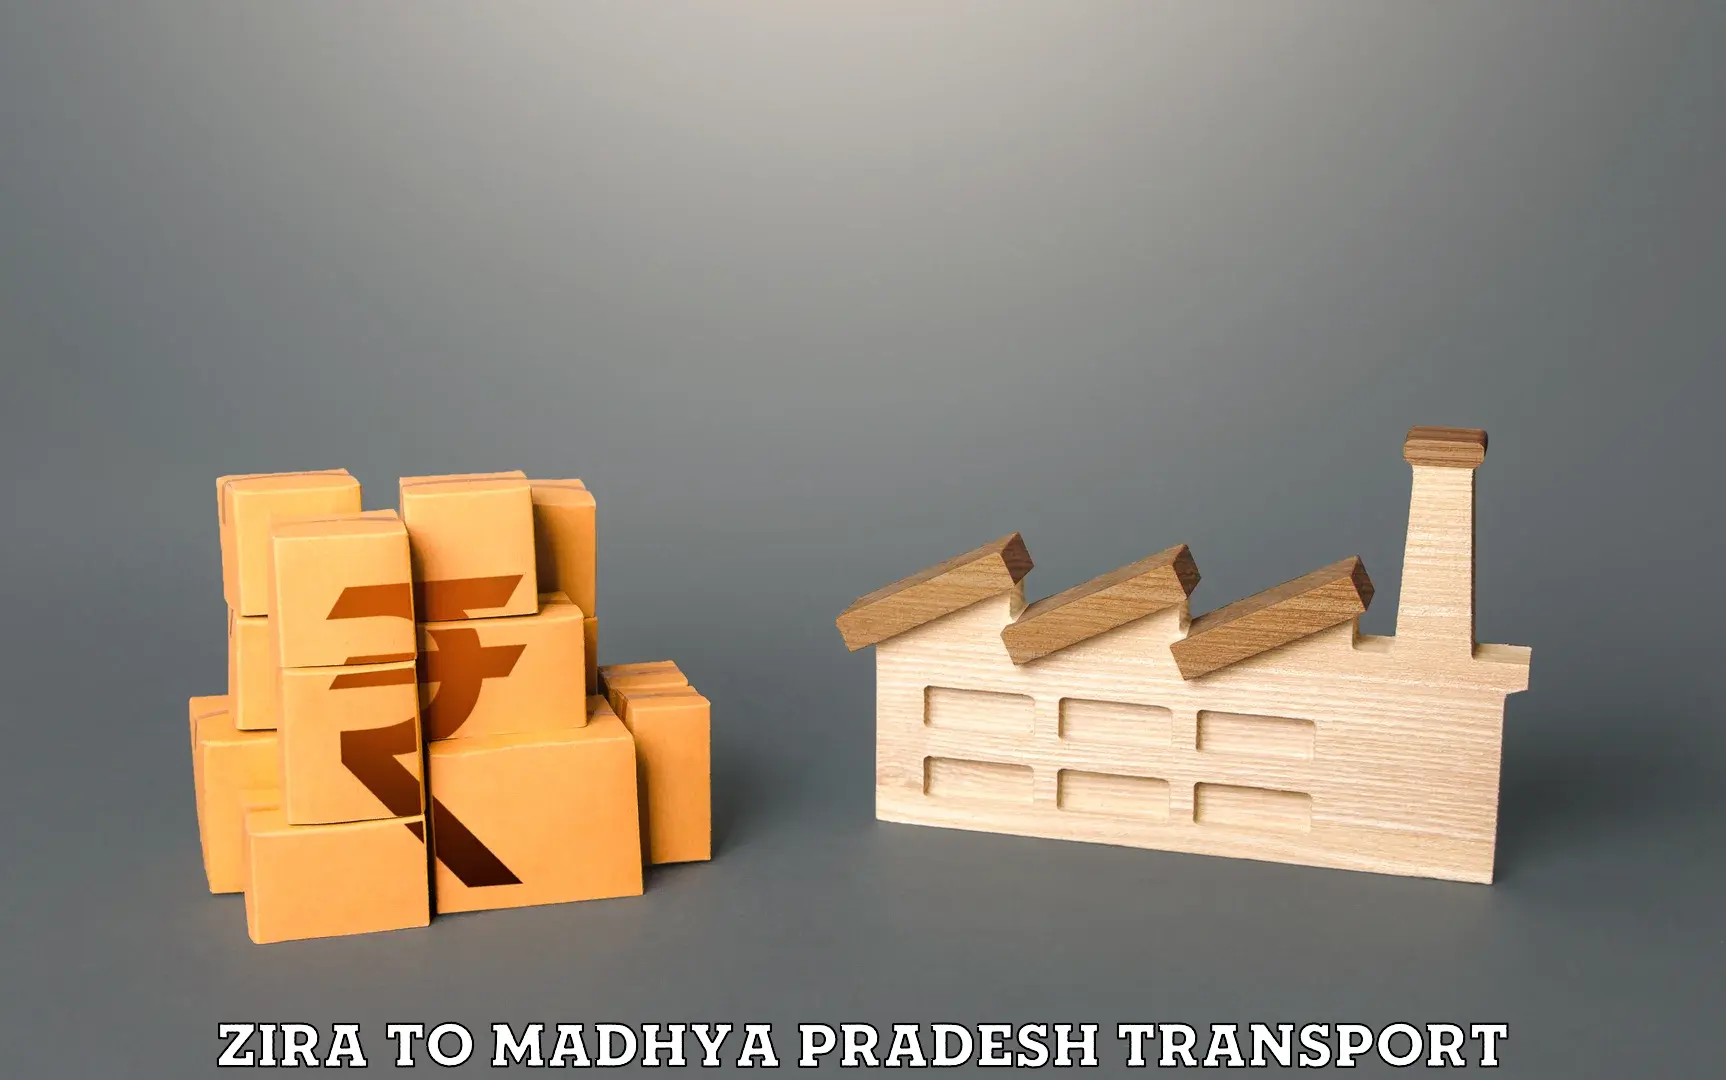 Shipping partner Zira to Madhya Pradesh